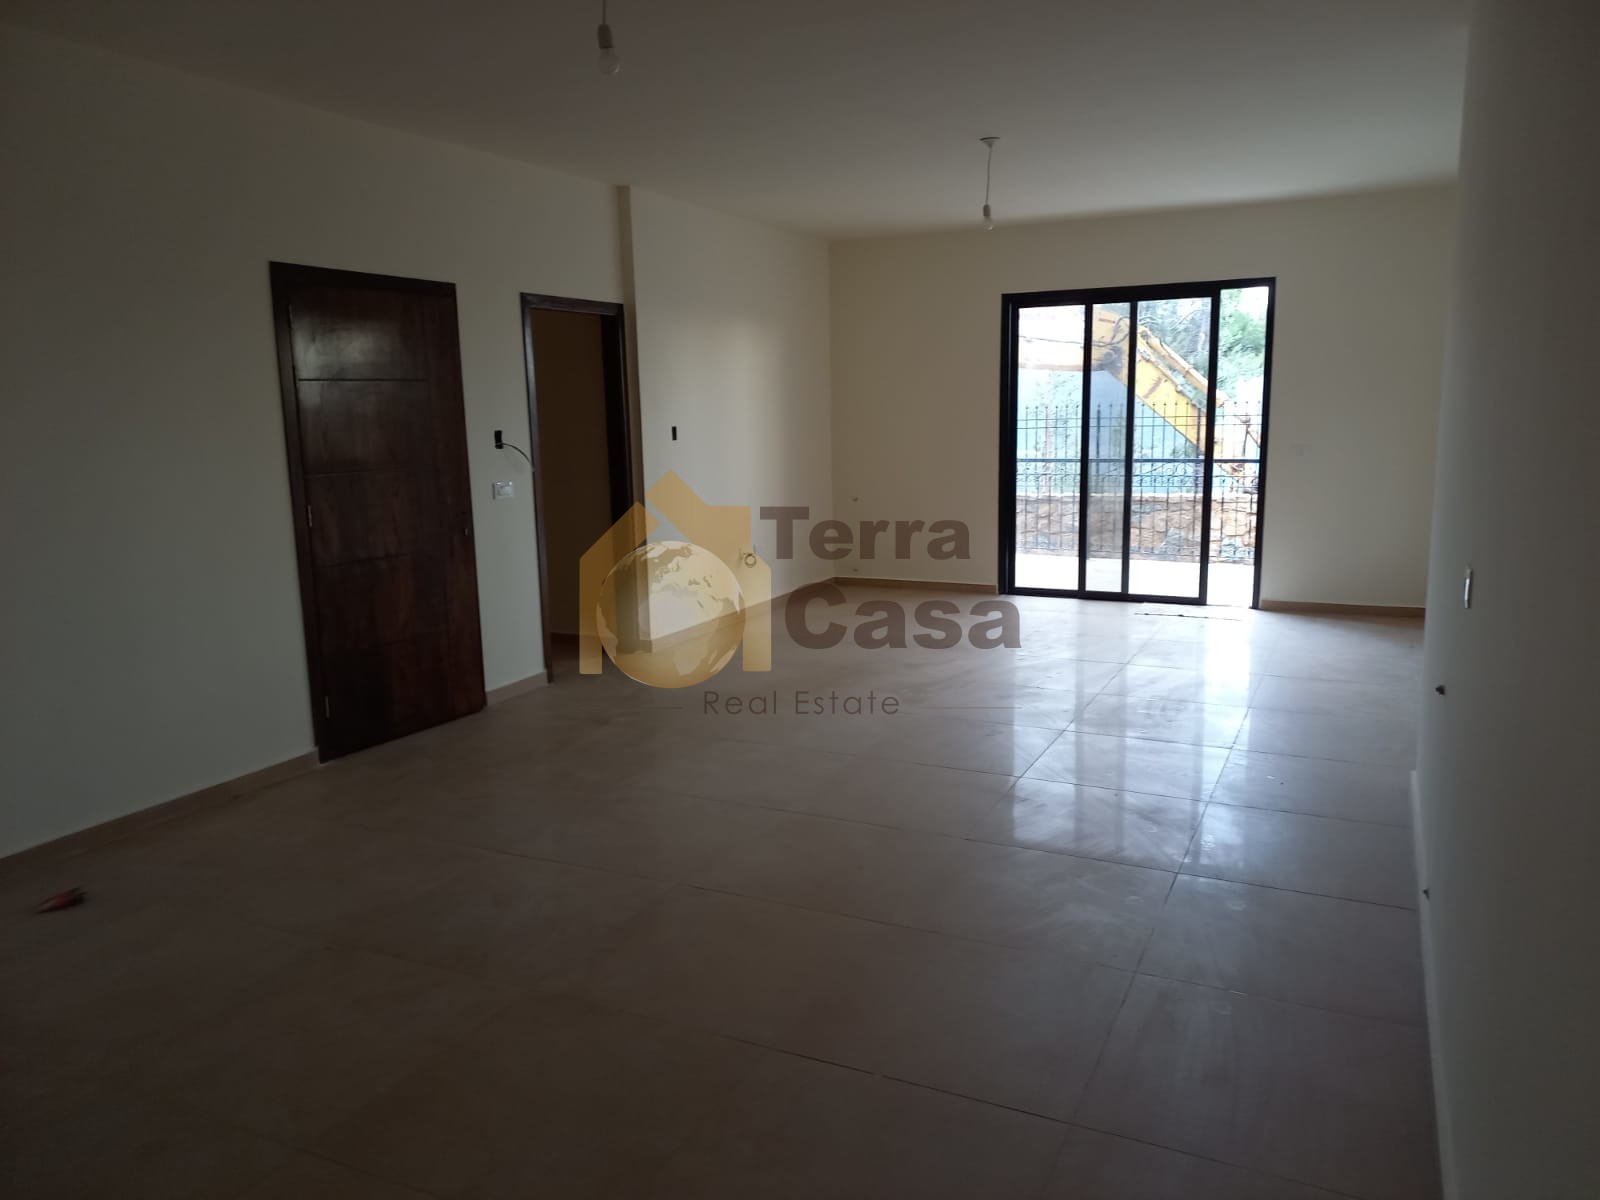 Sale apartment with terrace Mar Moussa Douar